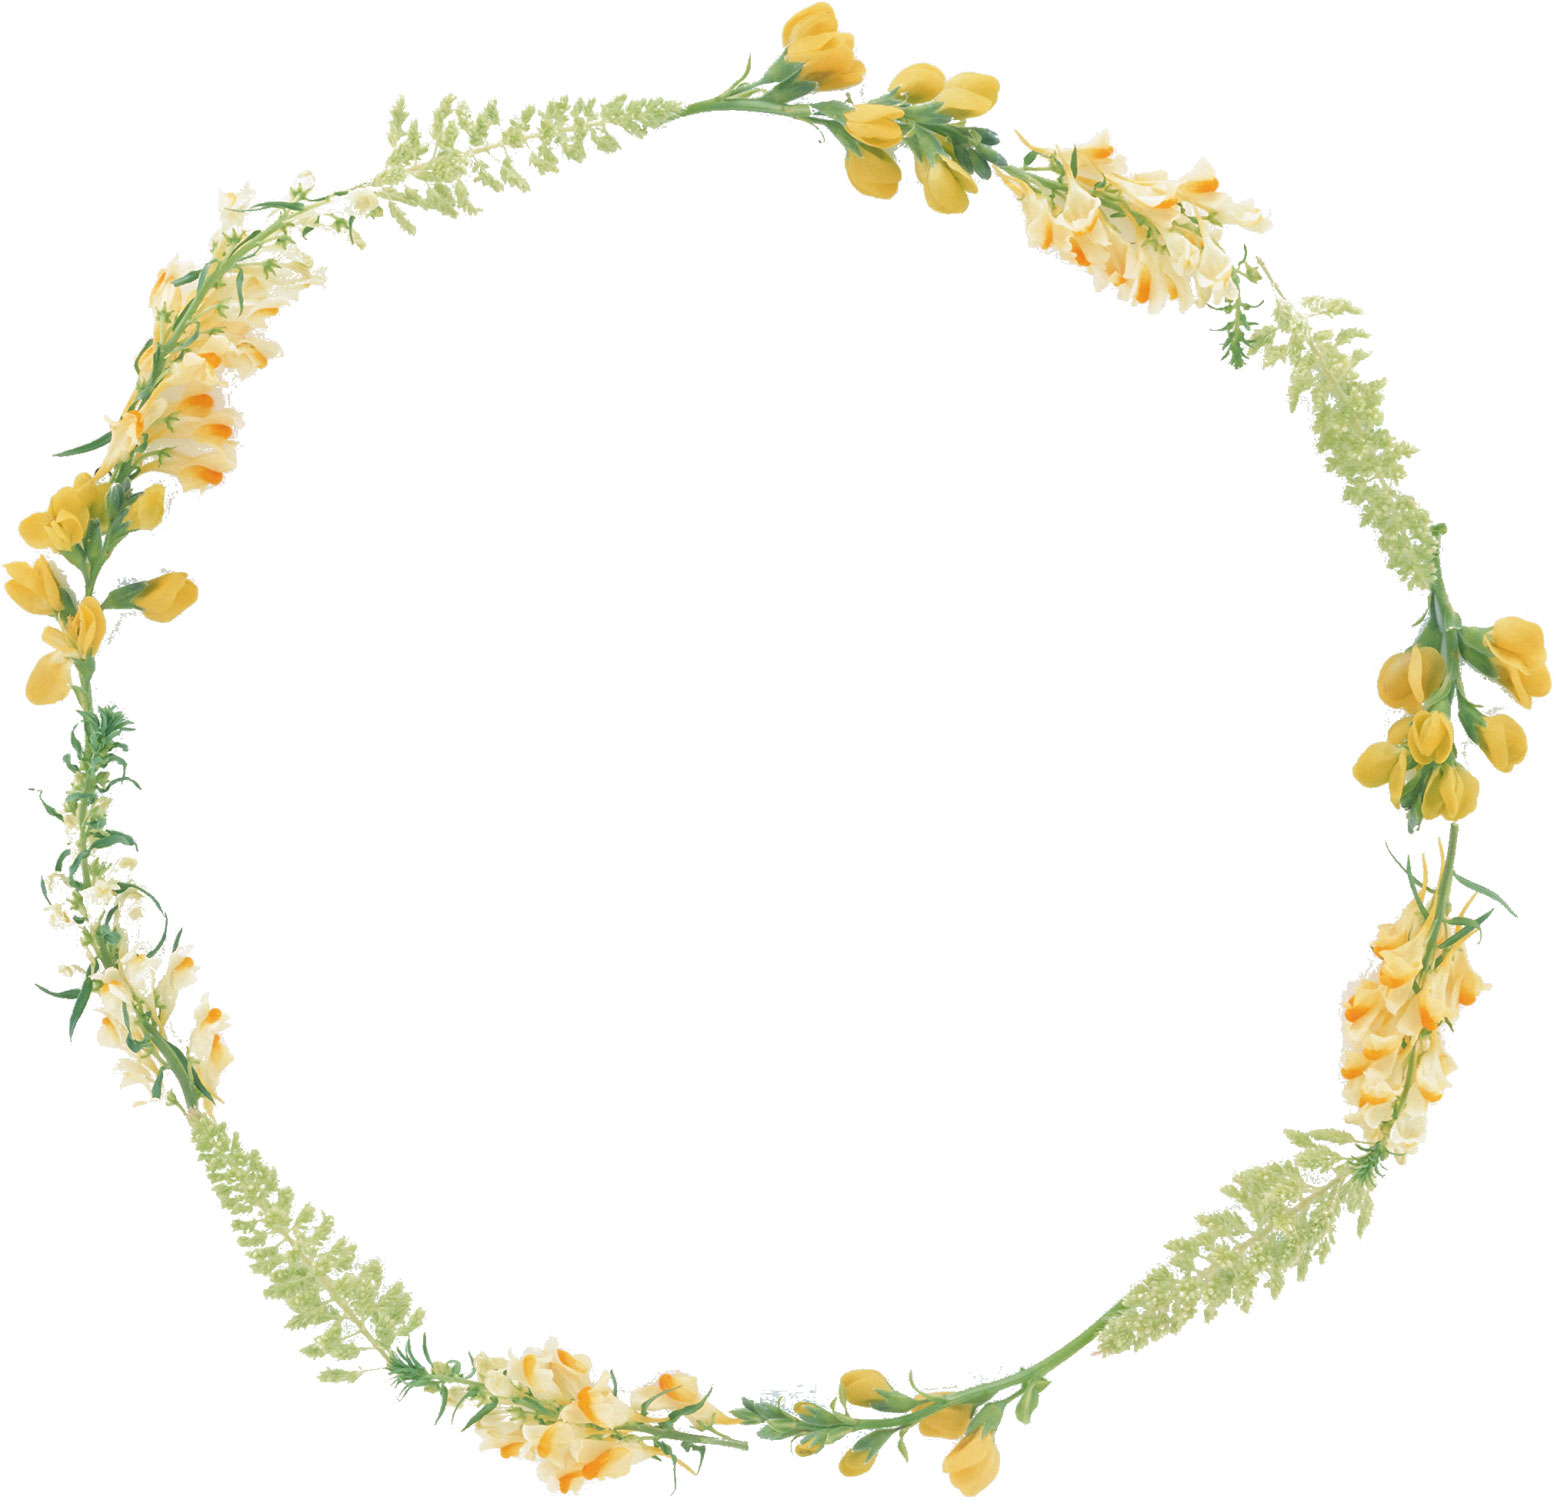 花の写真 フリー素材 フレーム枠no 035 黄 白 緑 葉 輪